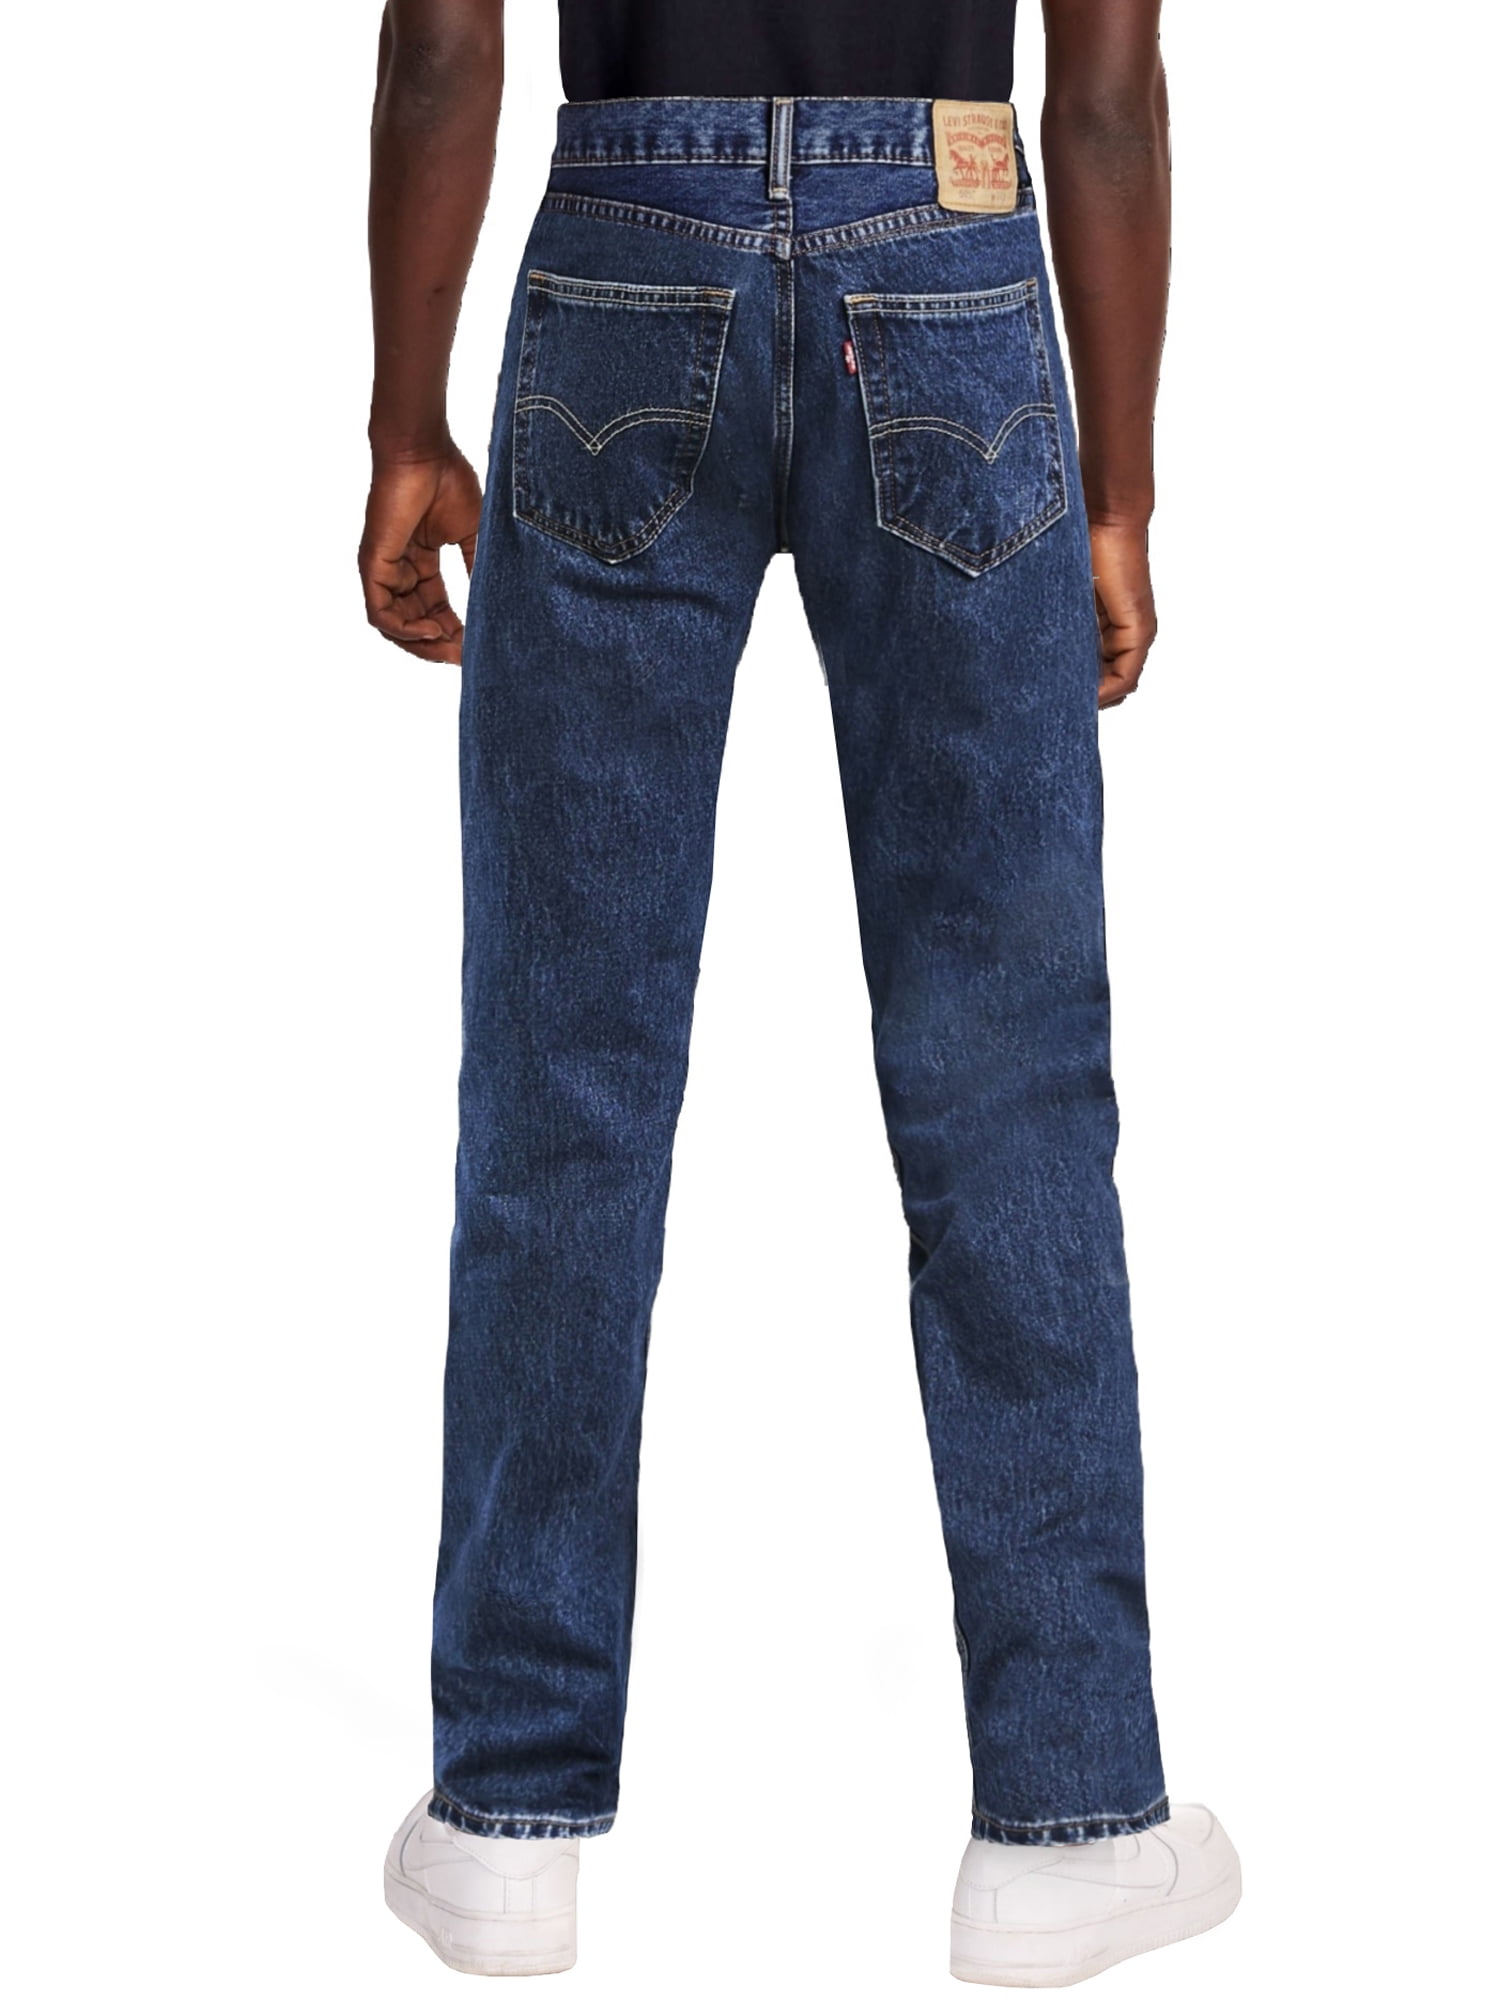 jeans 505 levis